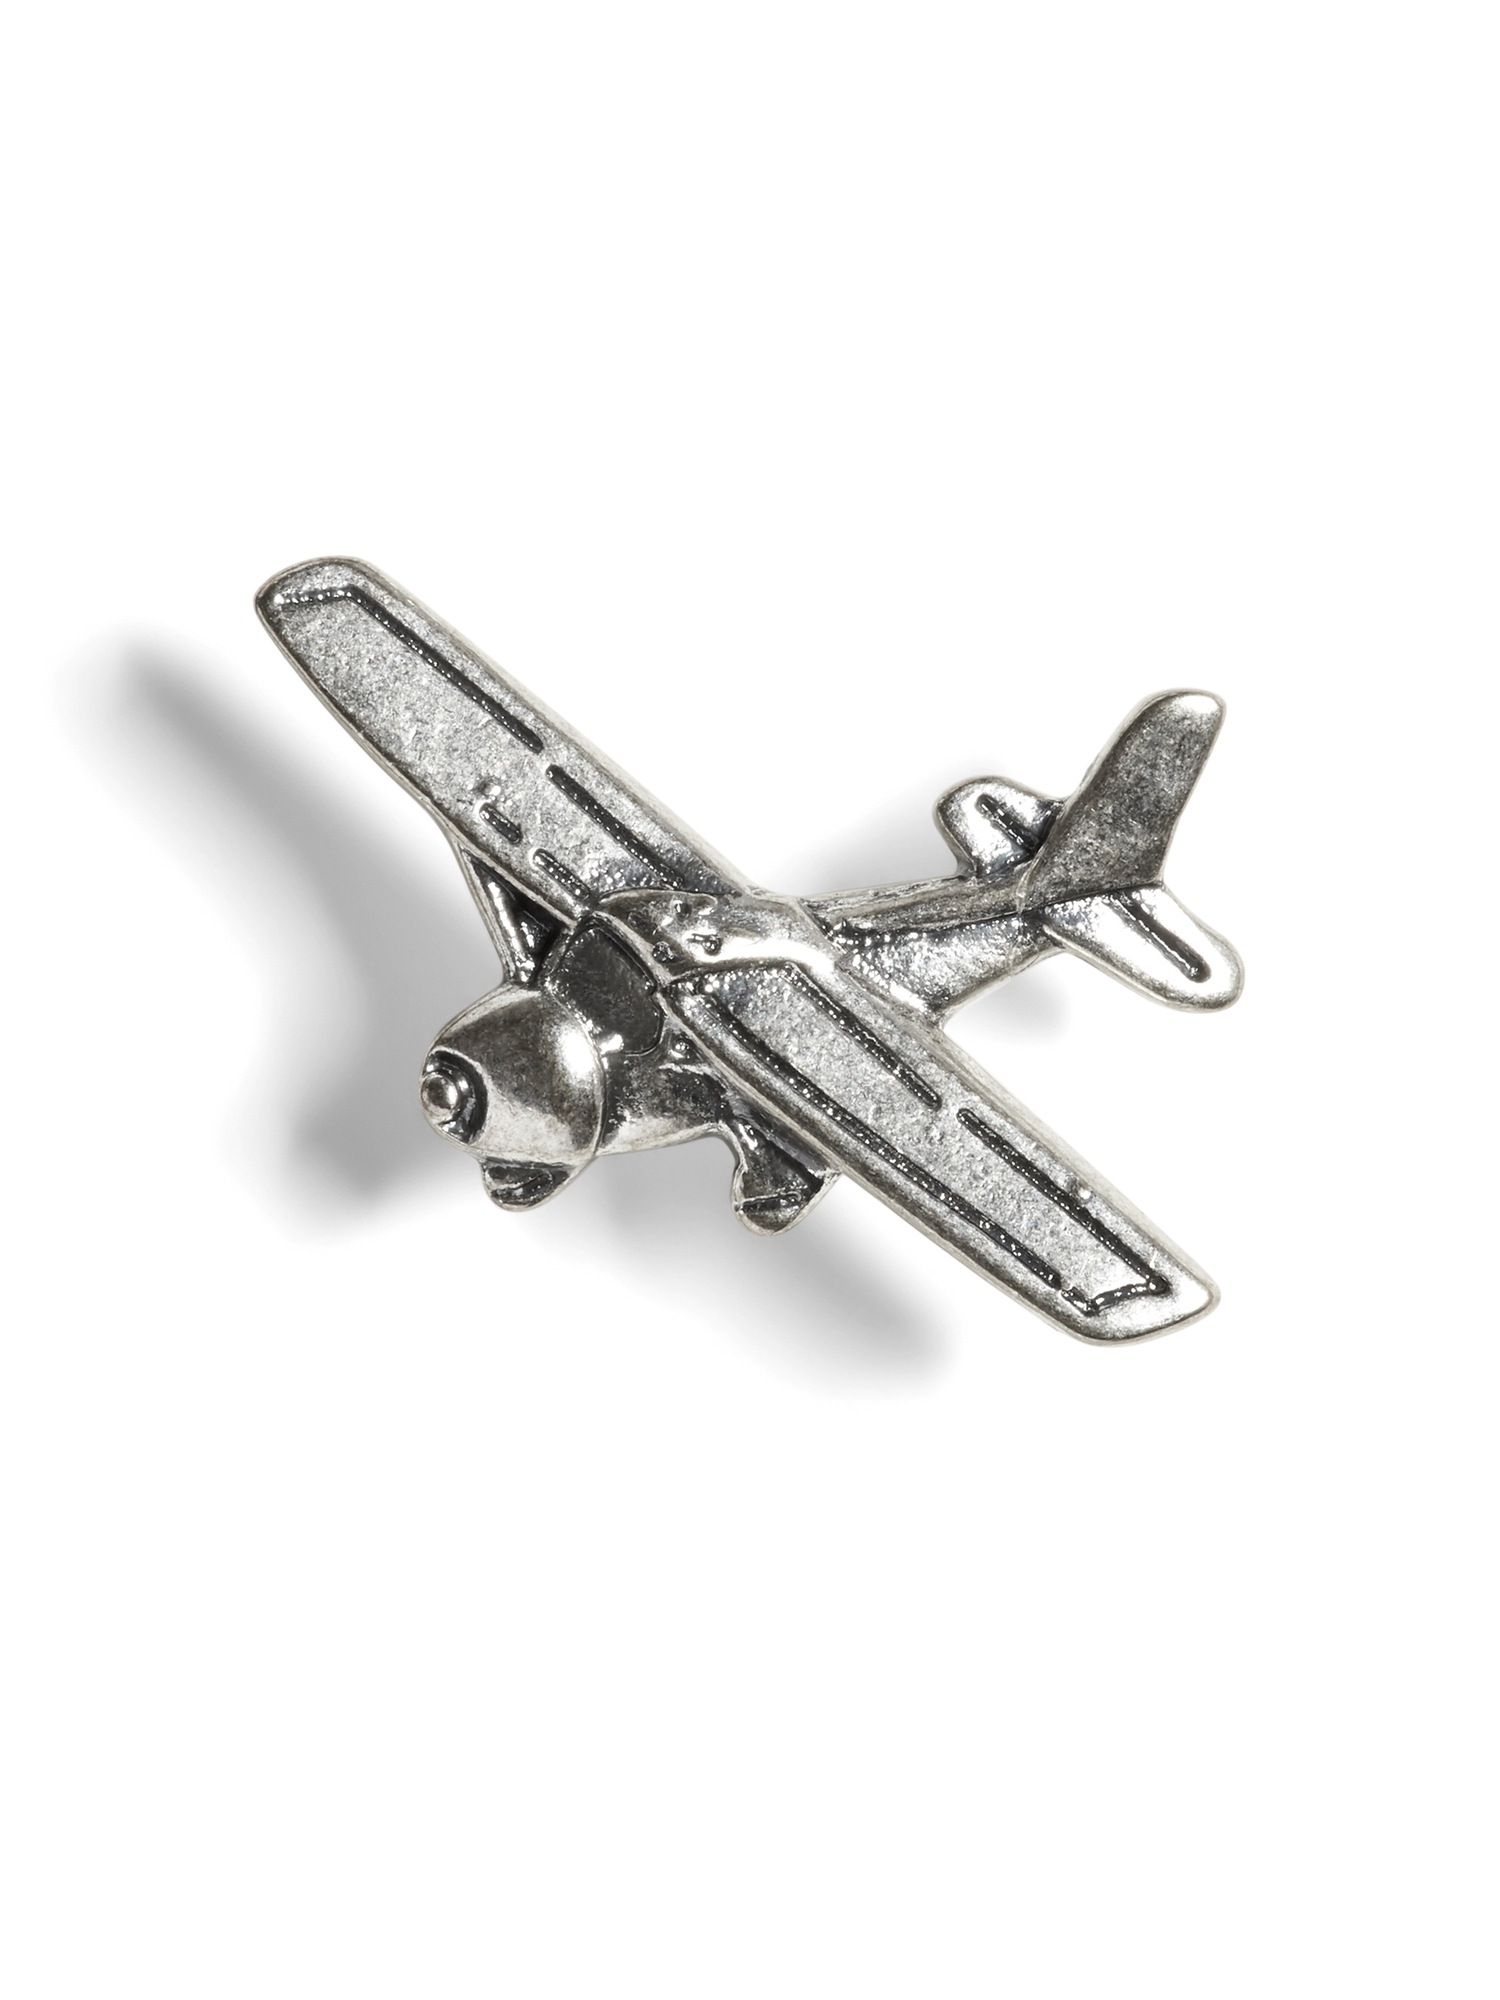 Airplane Pin